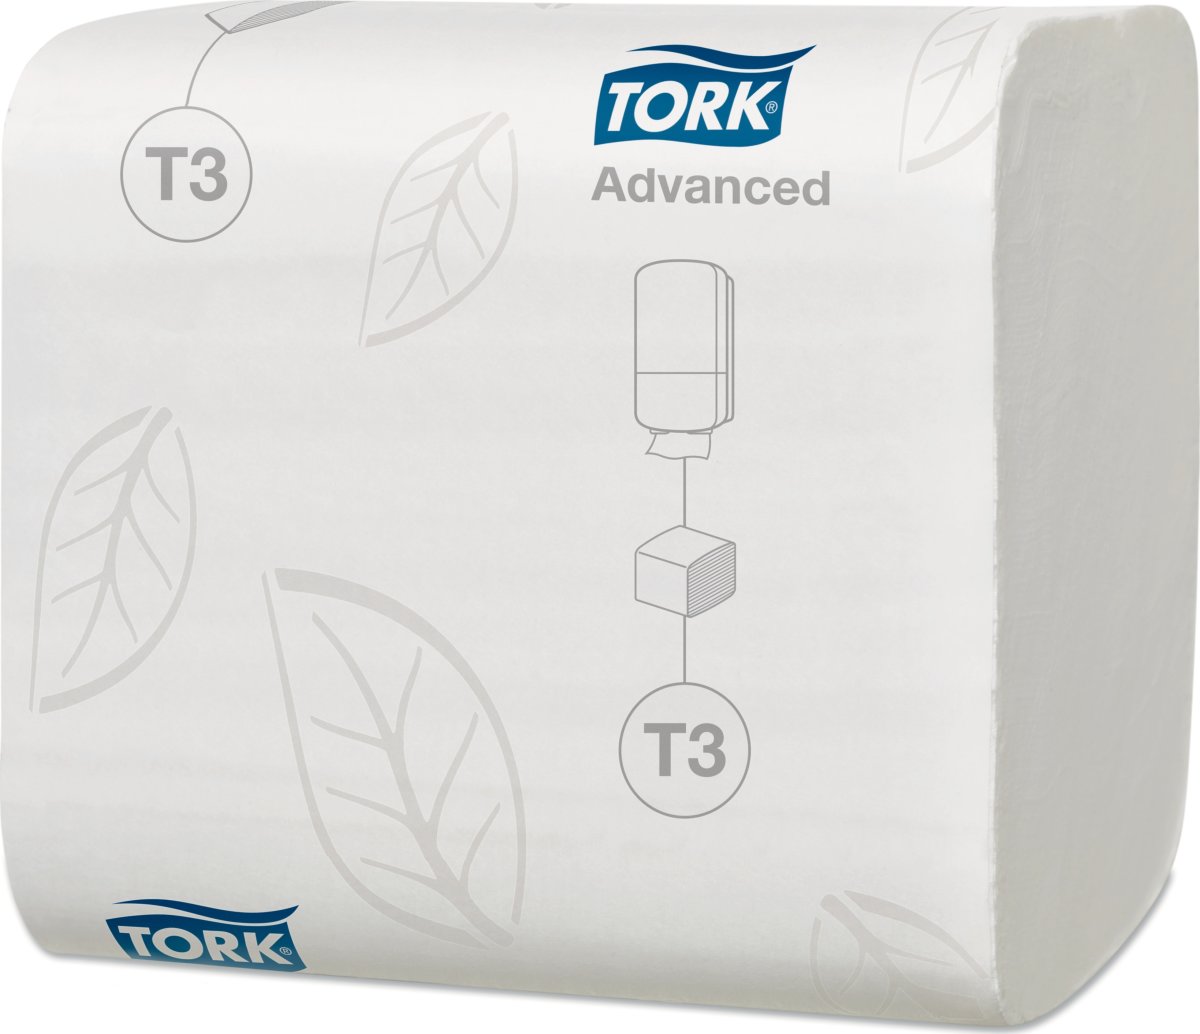 Tork T3 Advanced toalettpapper i ark, 36 paket